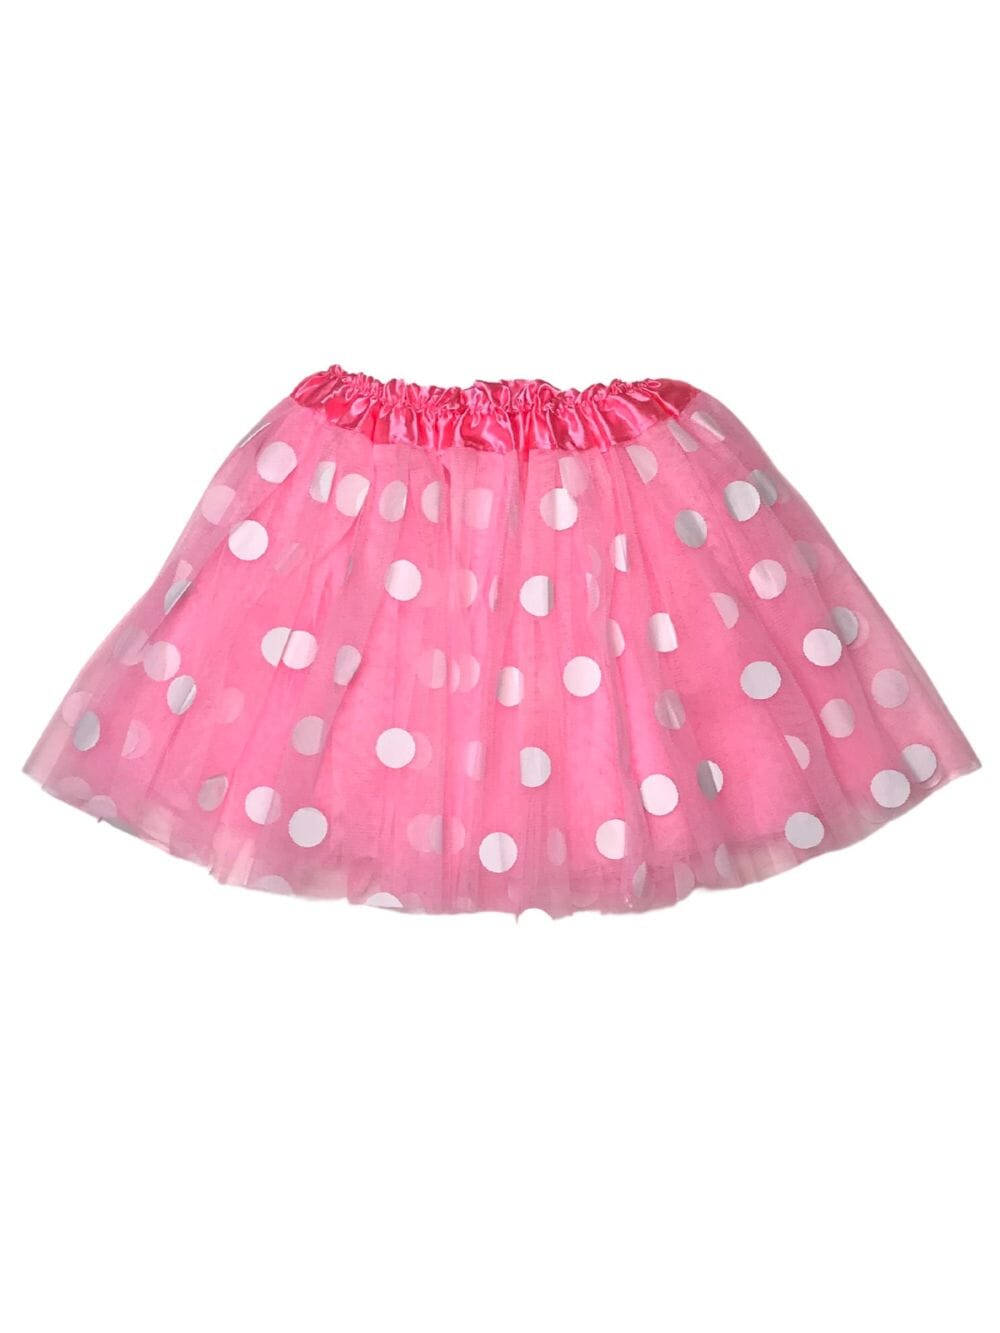 Pink and White Polka Dot Tutu Skirt Costume for Girls, Women, Plus